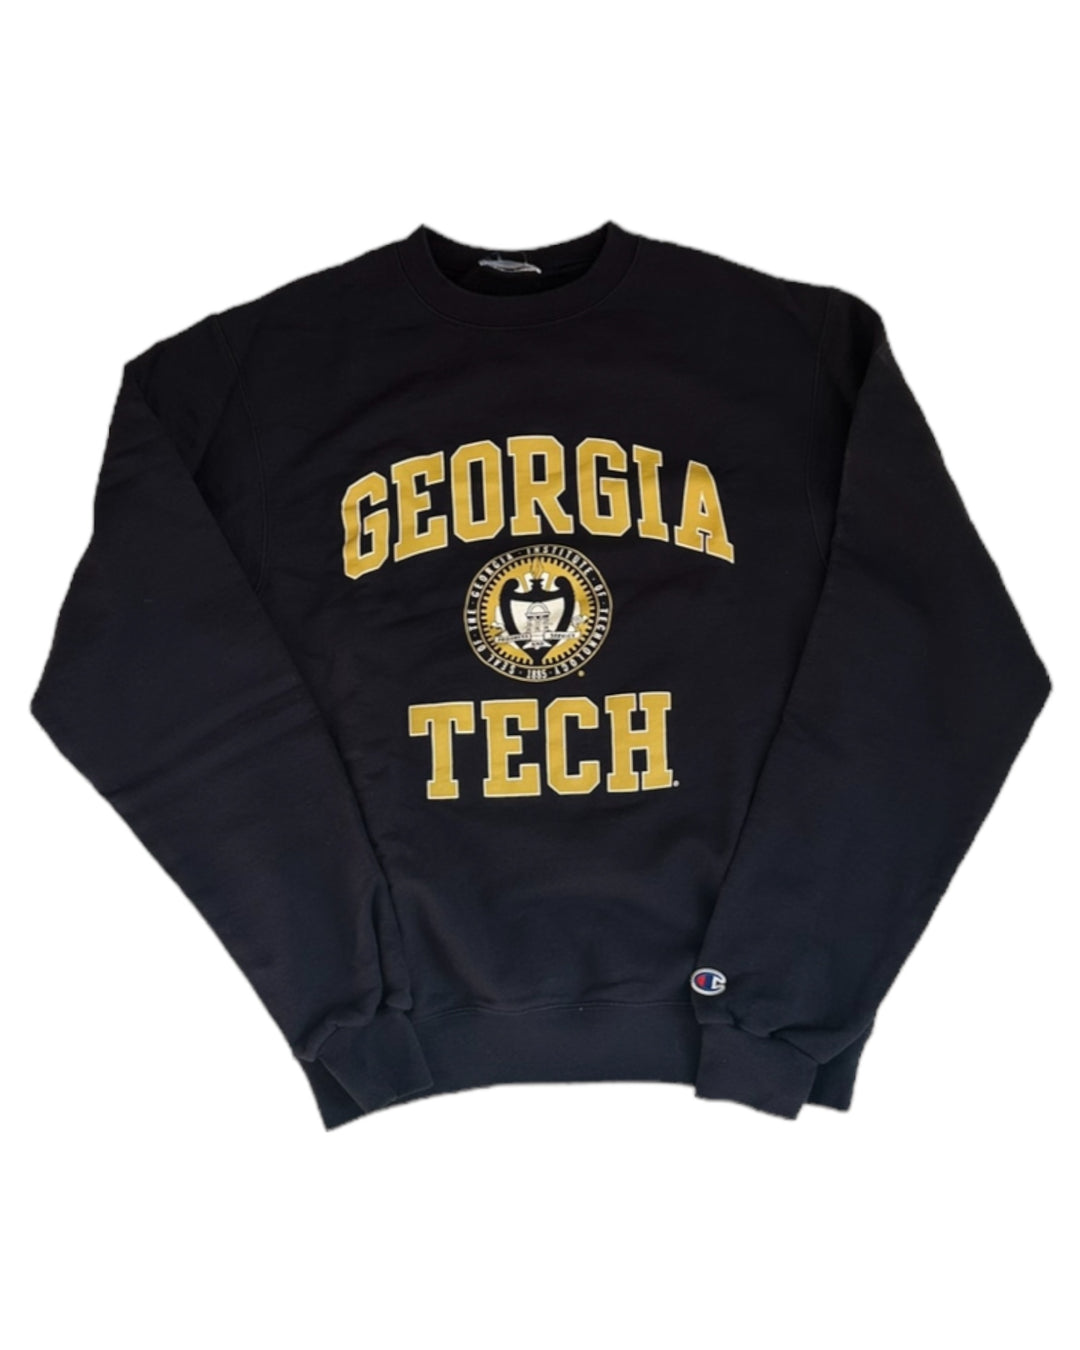 Georgia Teach Vintage Sweatshirt